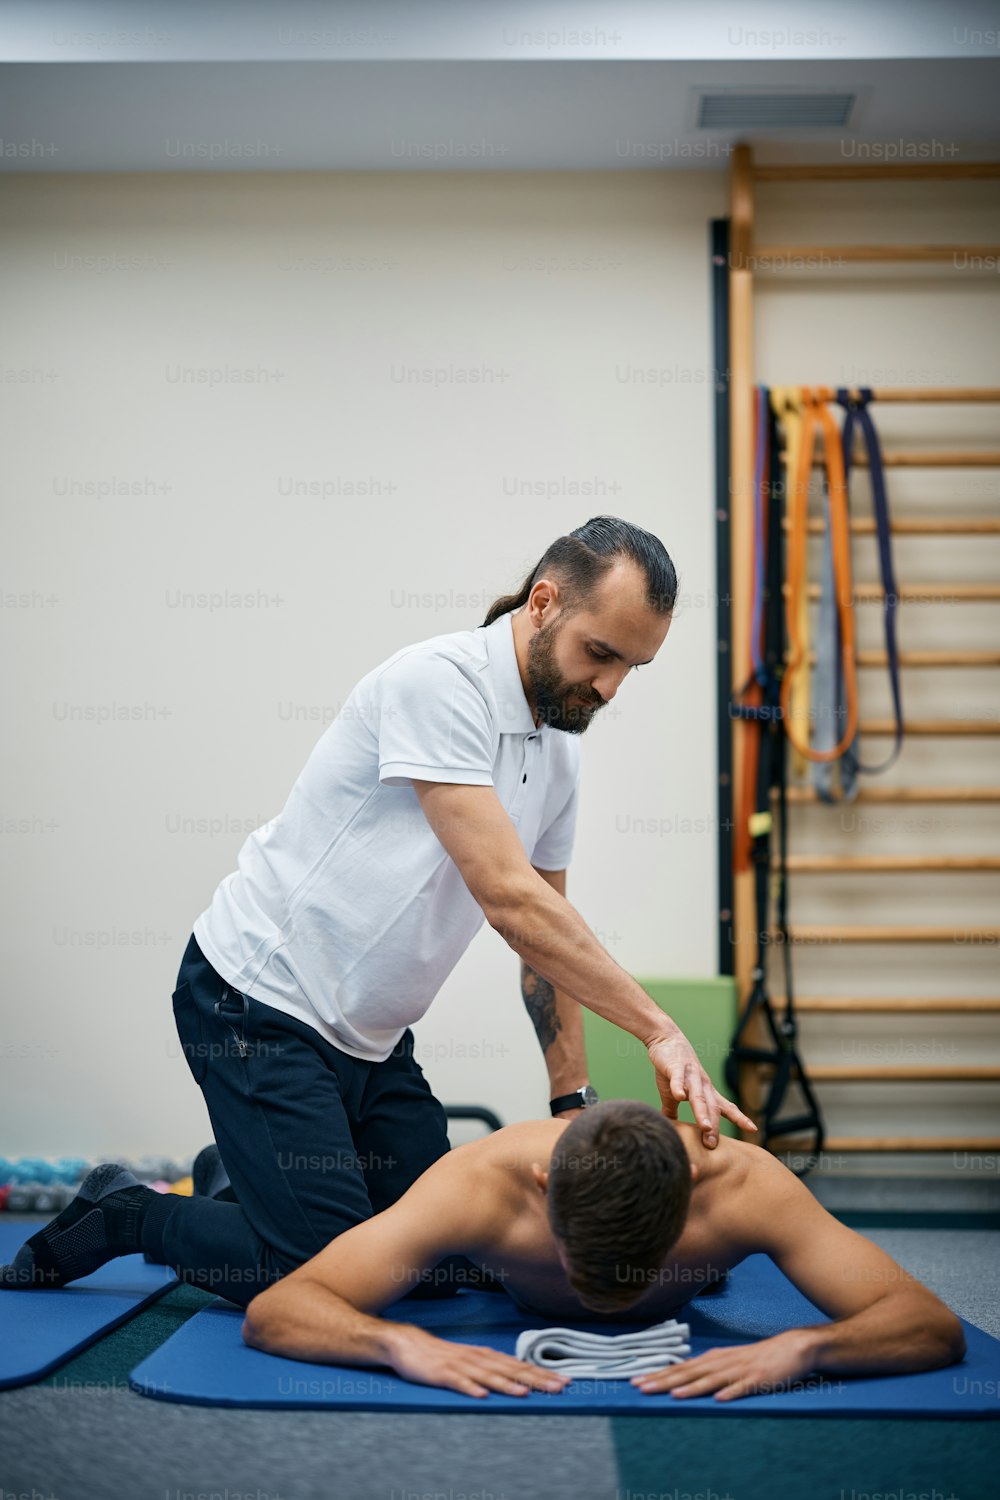 Fisioterapista massaggia la schiena di uno sportivo durante la terapia presso un centro di riabilitazione.